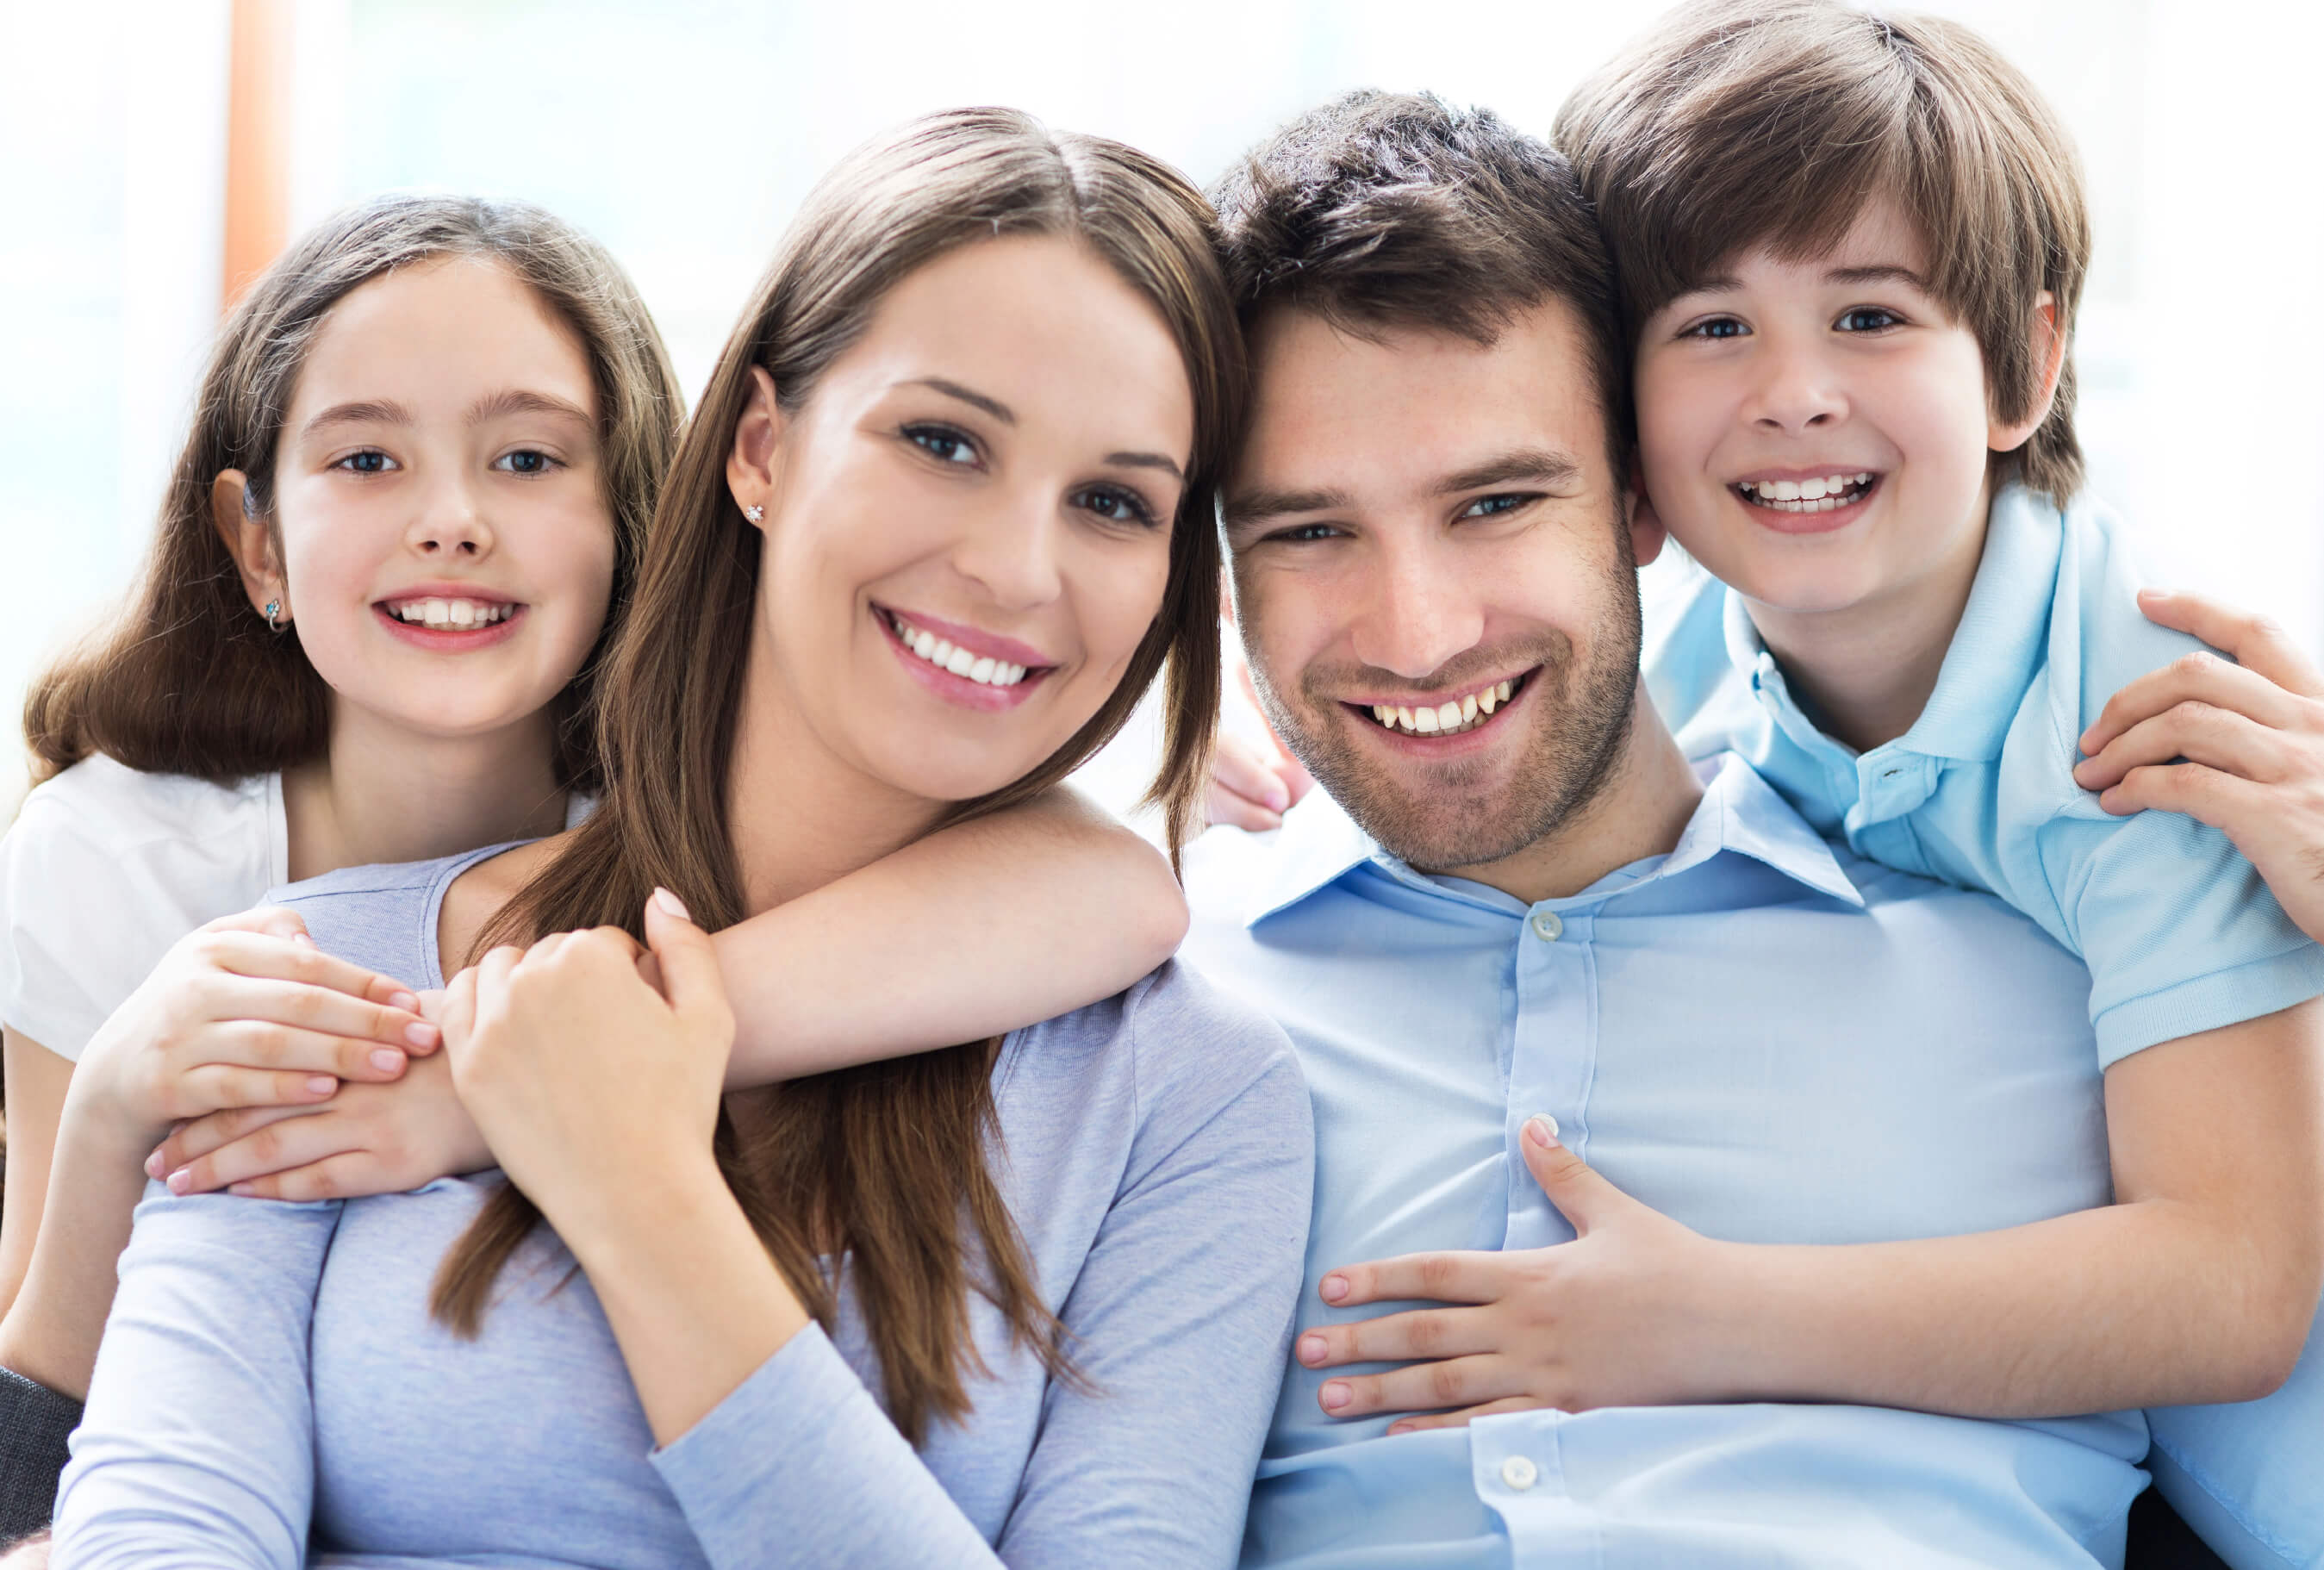 User family. Семья улыбается. Семья с детьми улыбаются. Счастливые лица семьи. Улыбки взрослых и детей.